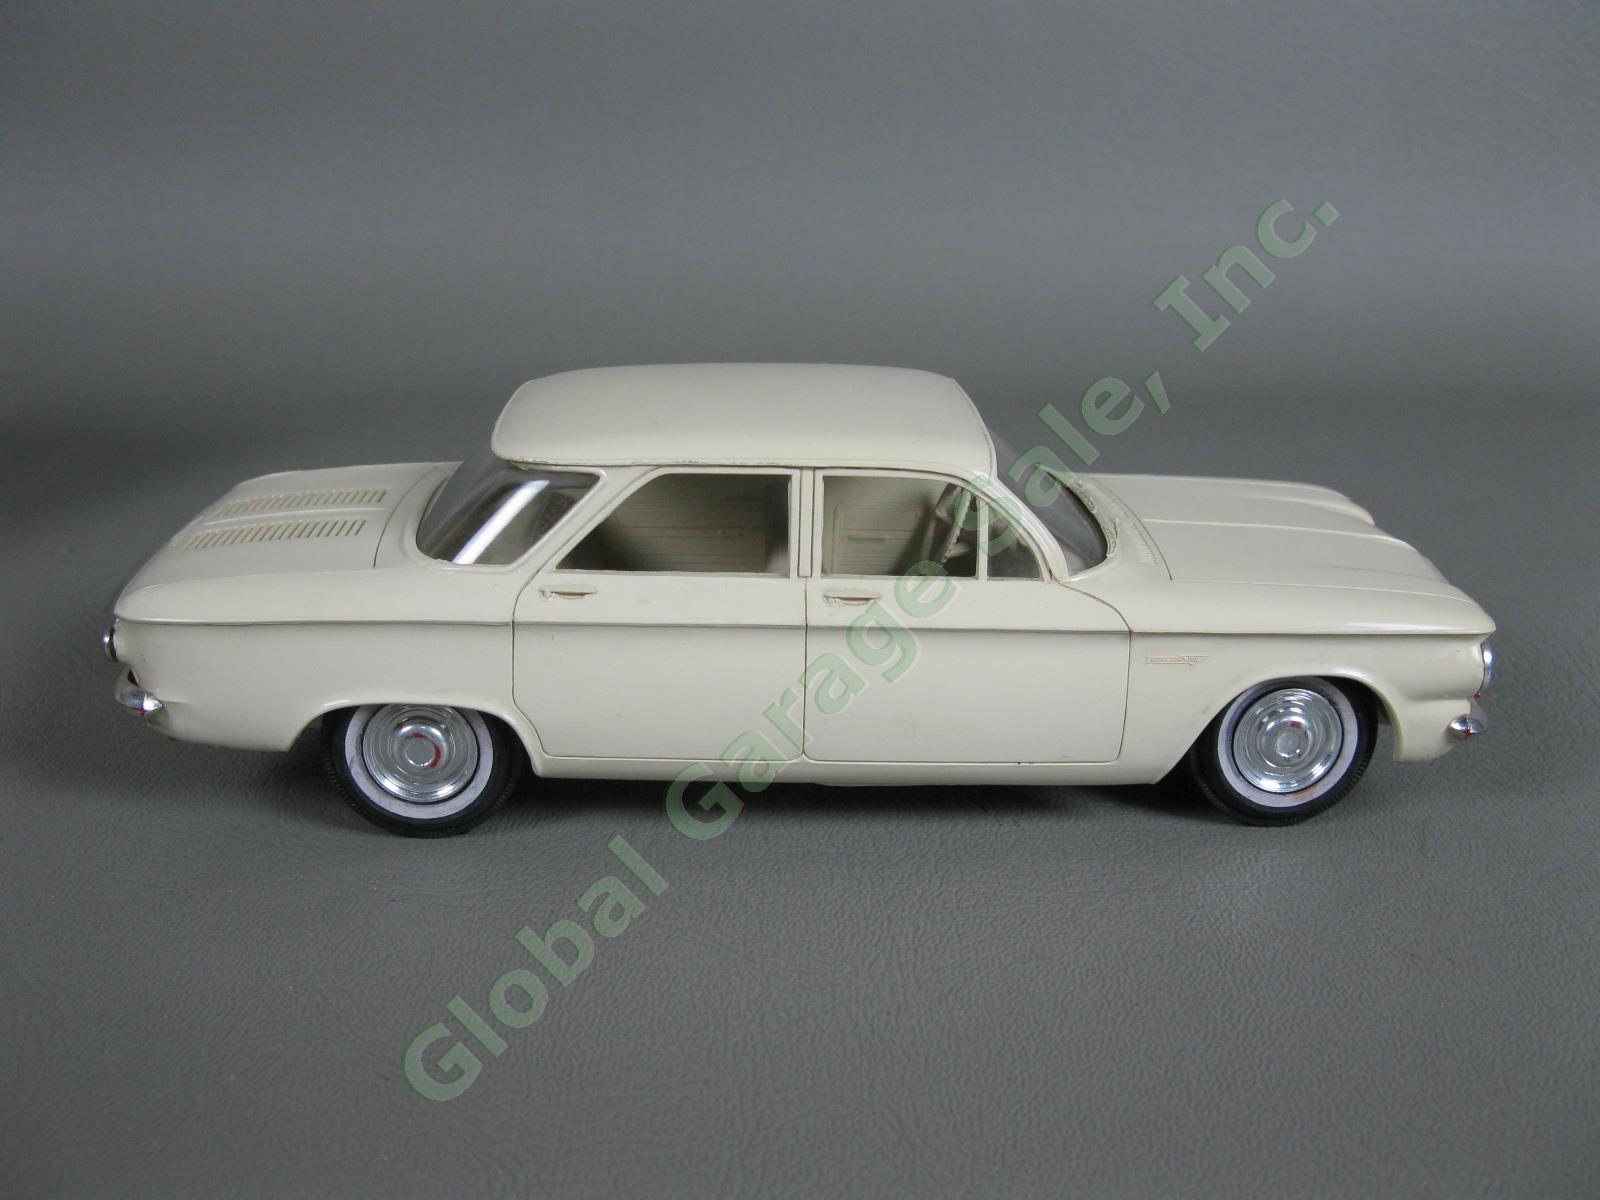 ORIGINAL Vintage 1961 Chevrolet Cameo White Corvair Dealer Promo Model Car NR 3